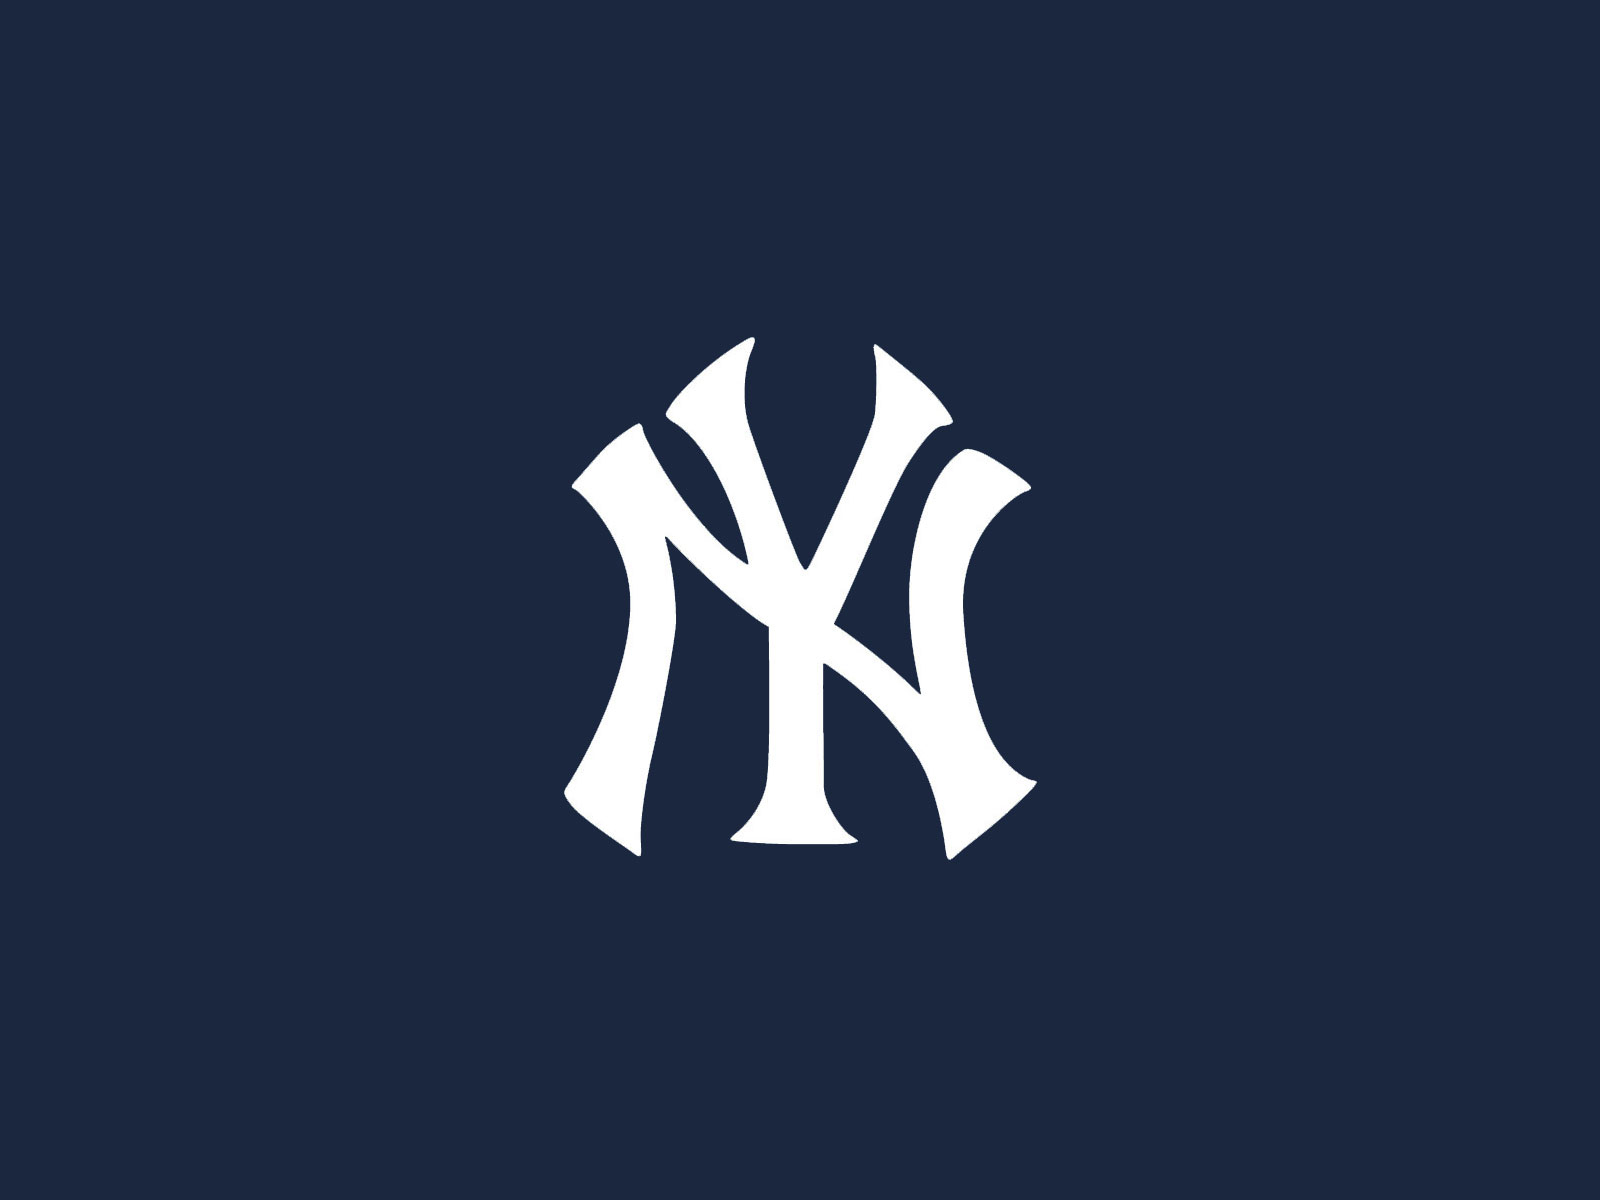 Wallpaper Of Yankees Puter Desktop Image Pictures